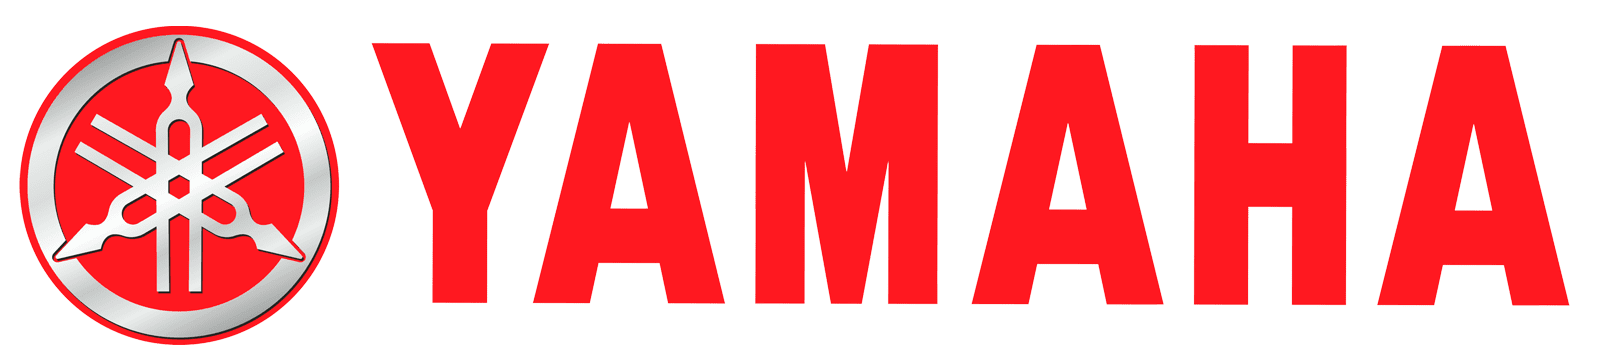 Yamaha_Logo_Trim